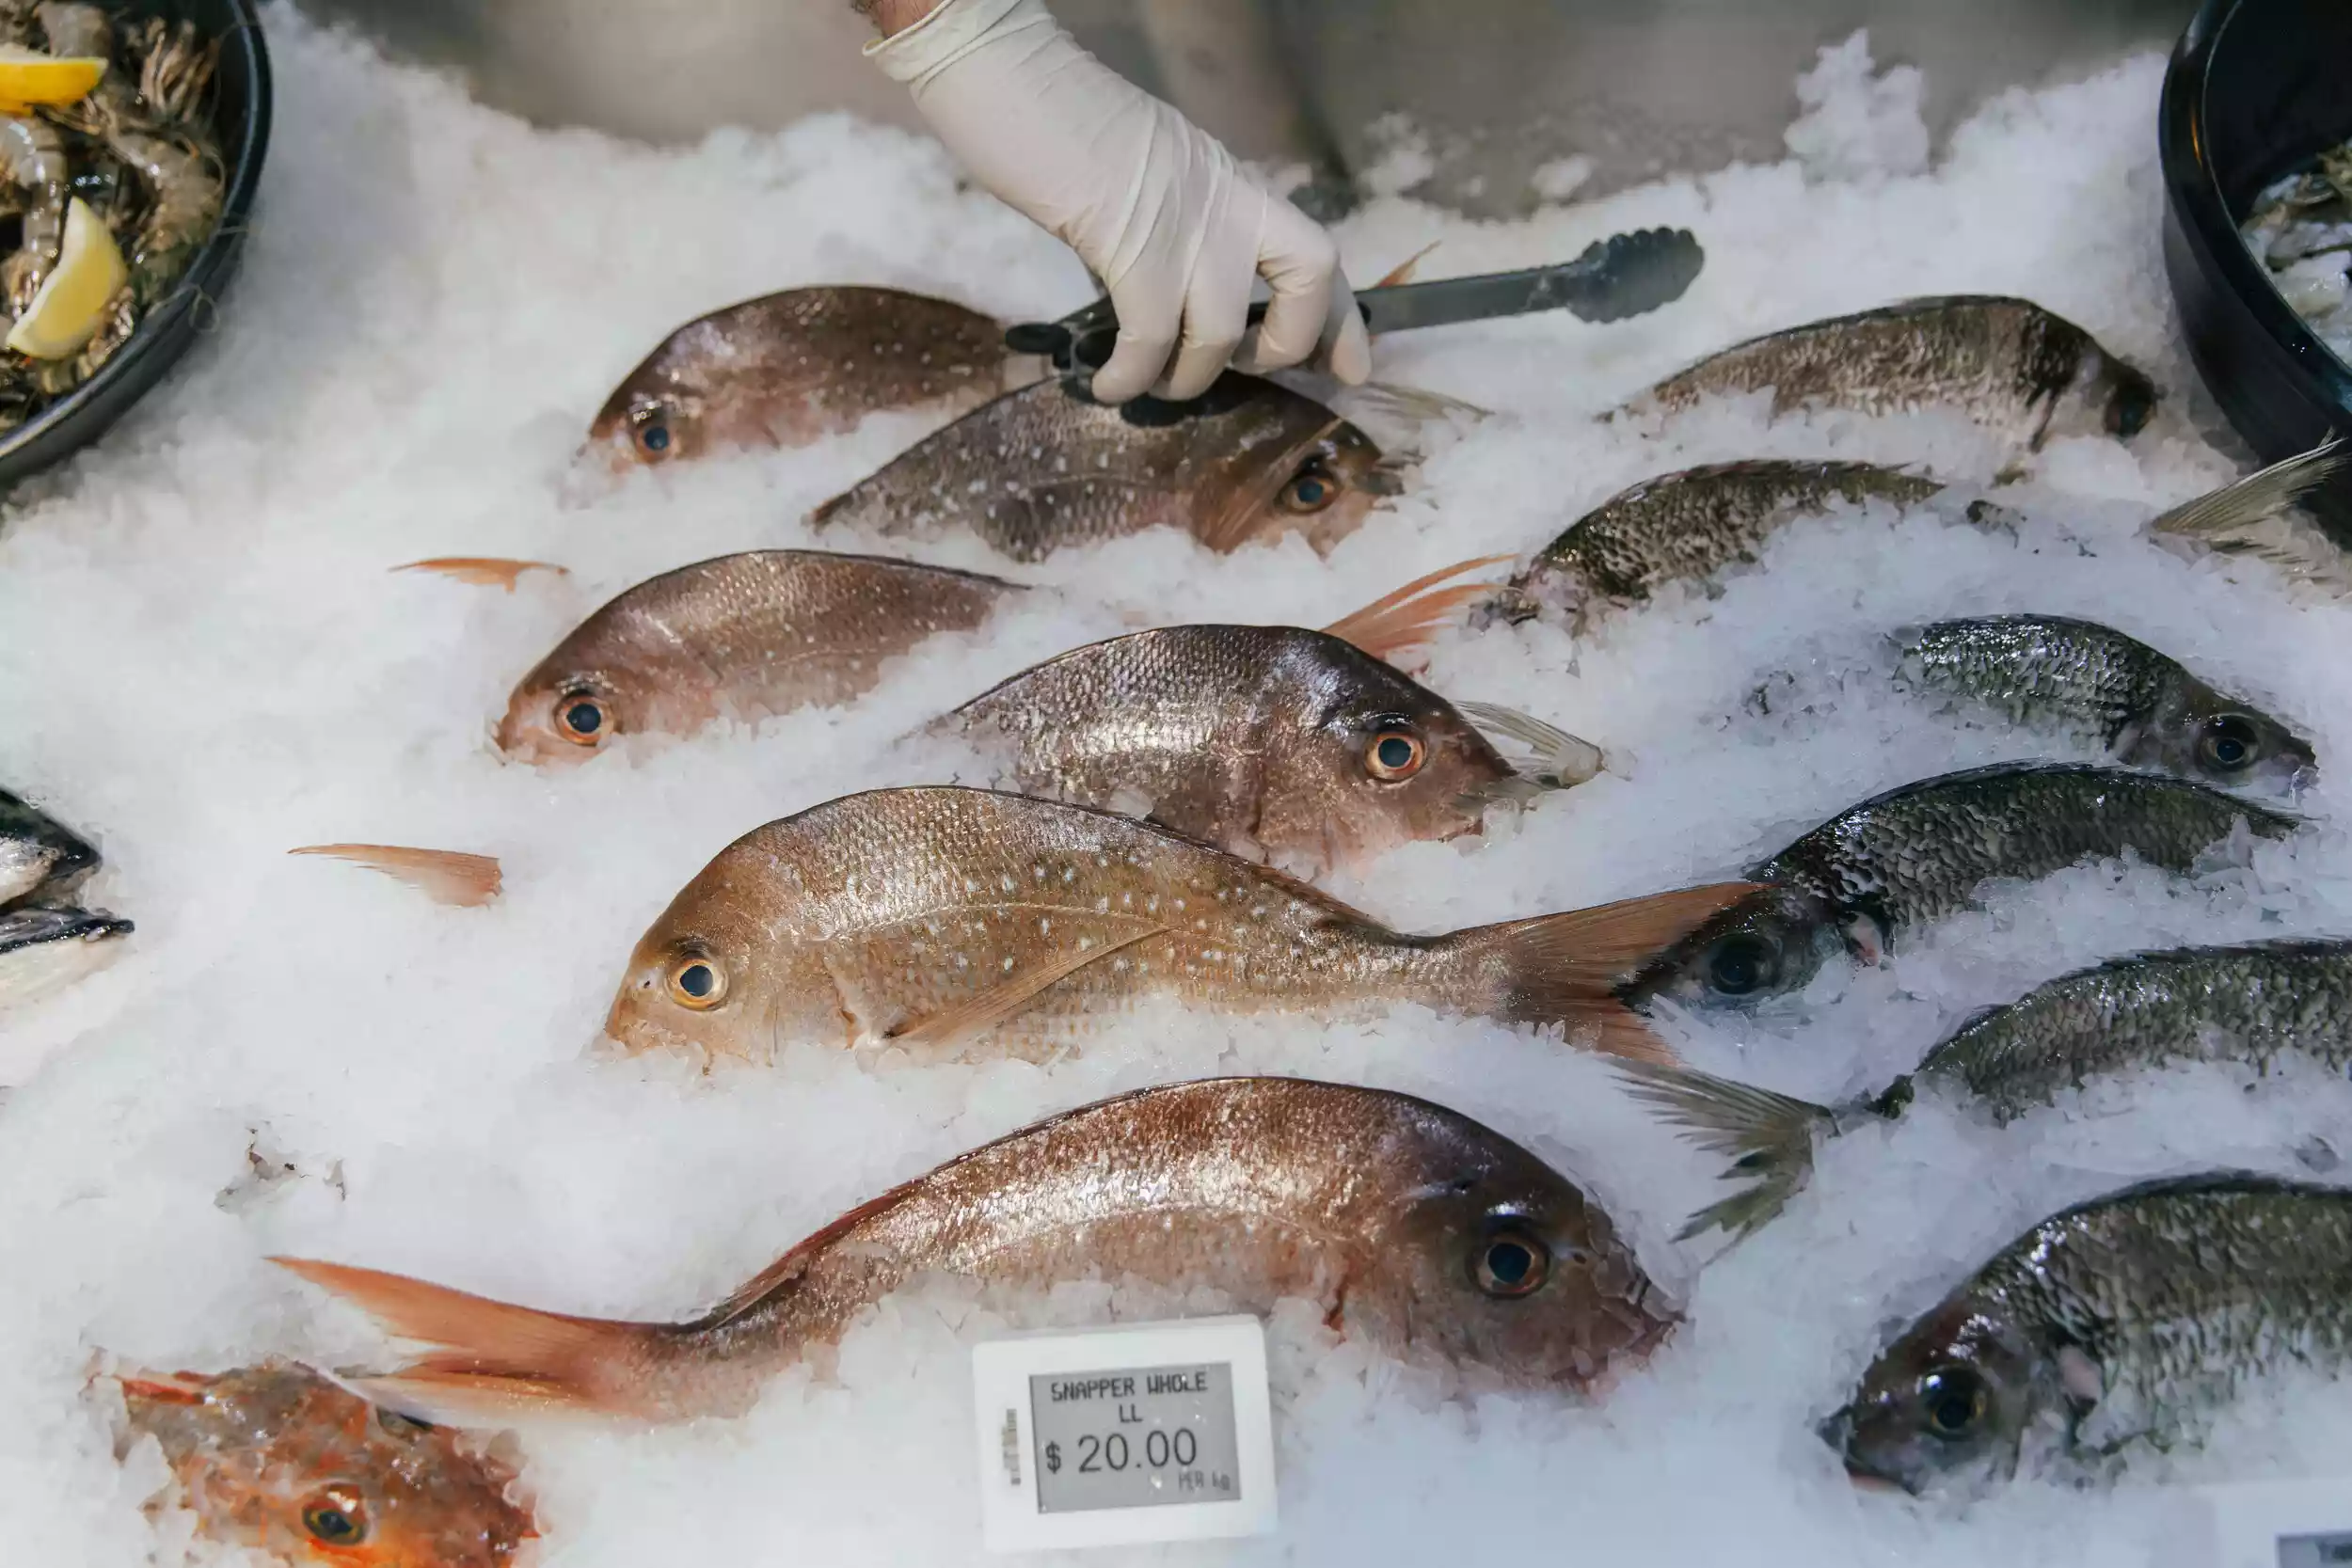 إغلاق محلات أسماك في عمان لوجود حشرات وصراصير